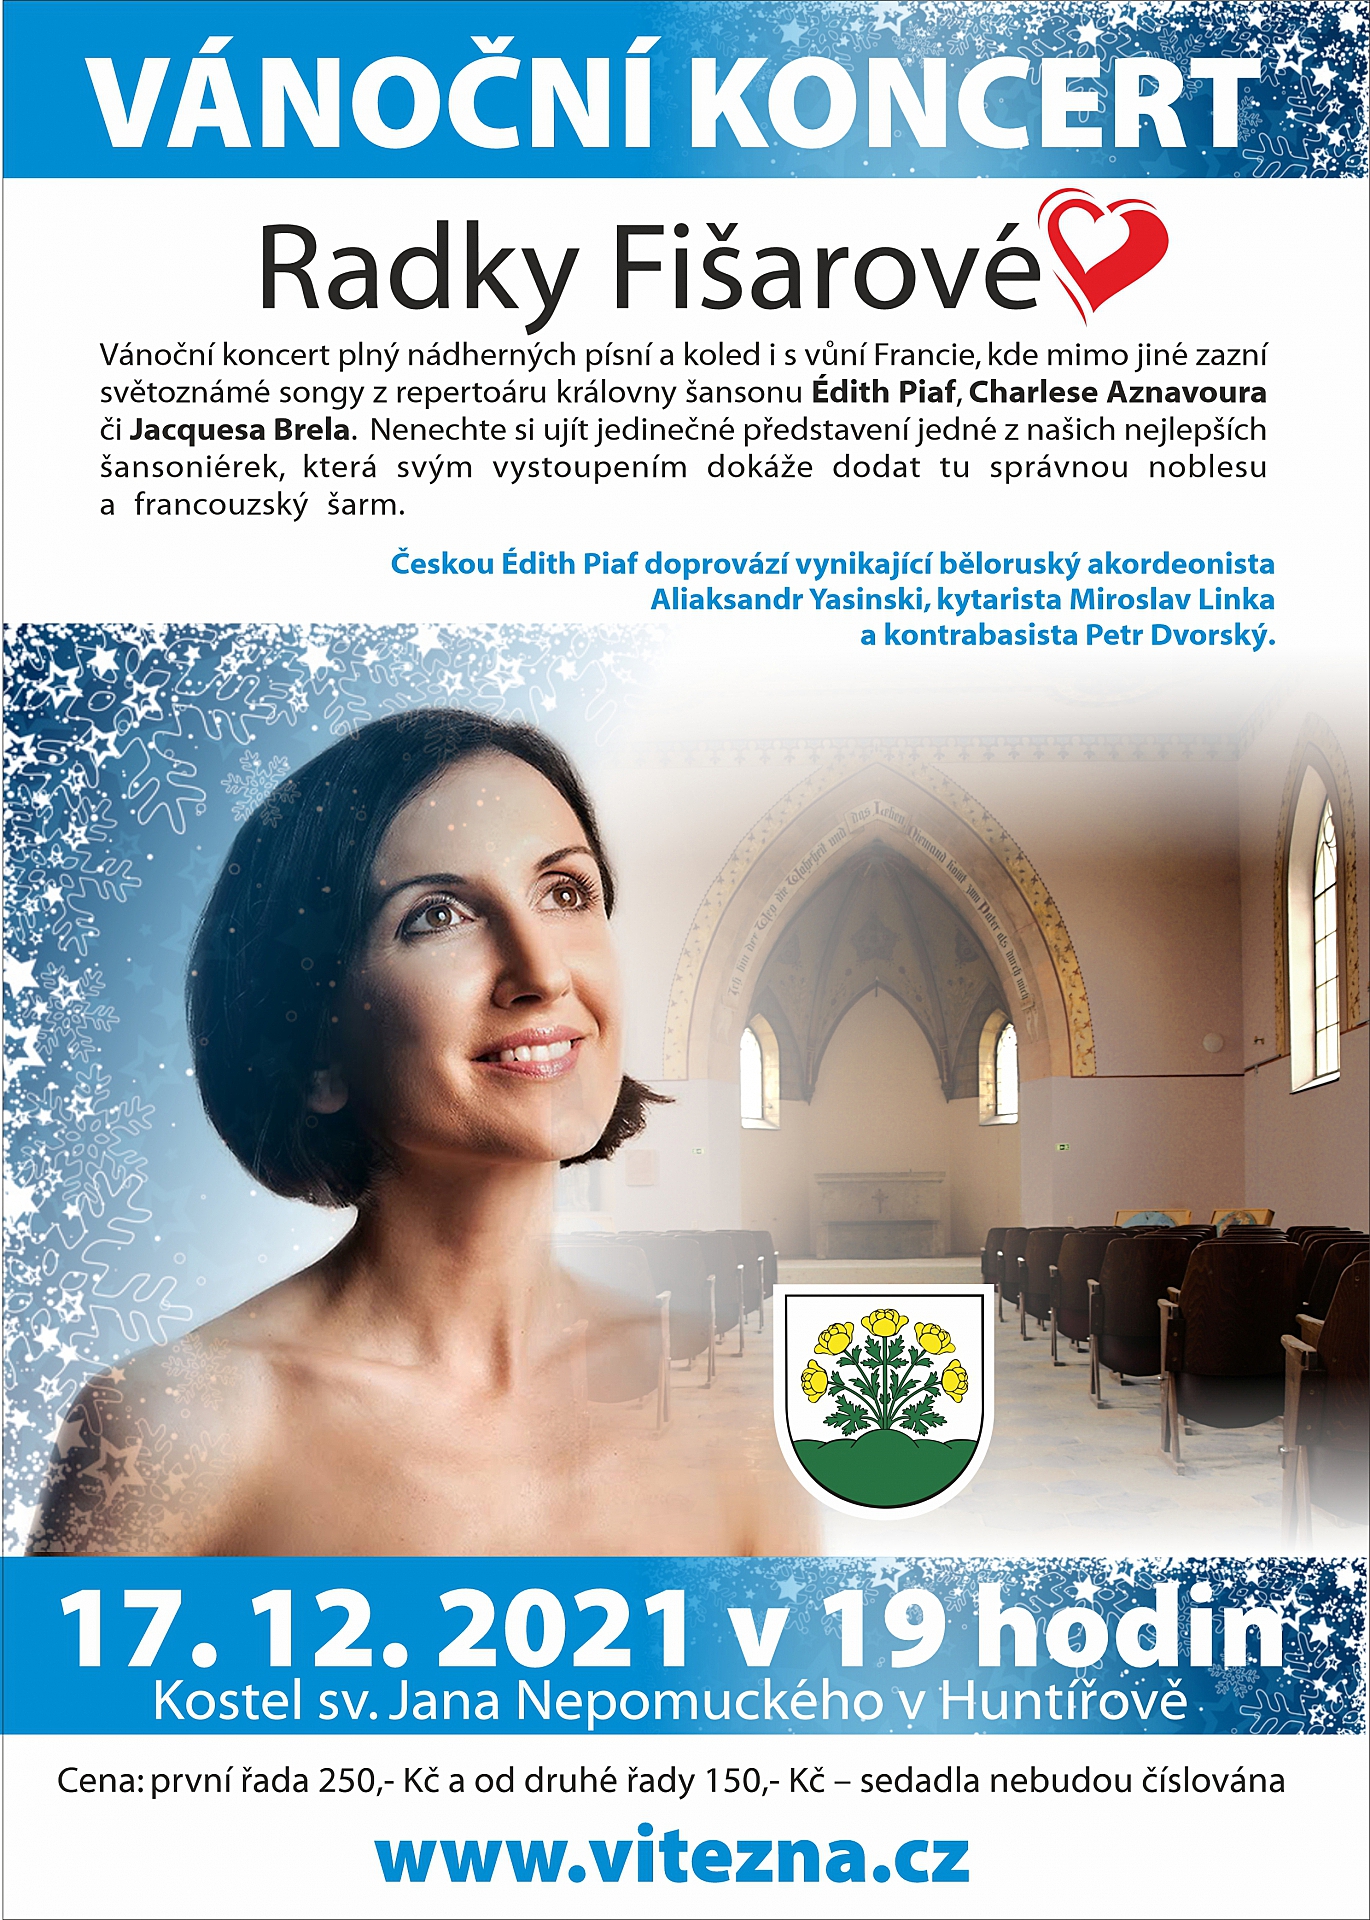 Vánoční koncert Radky Fišarové v kostele sv. Jana Nepomuckého v Huntířově